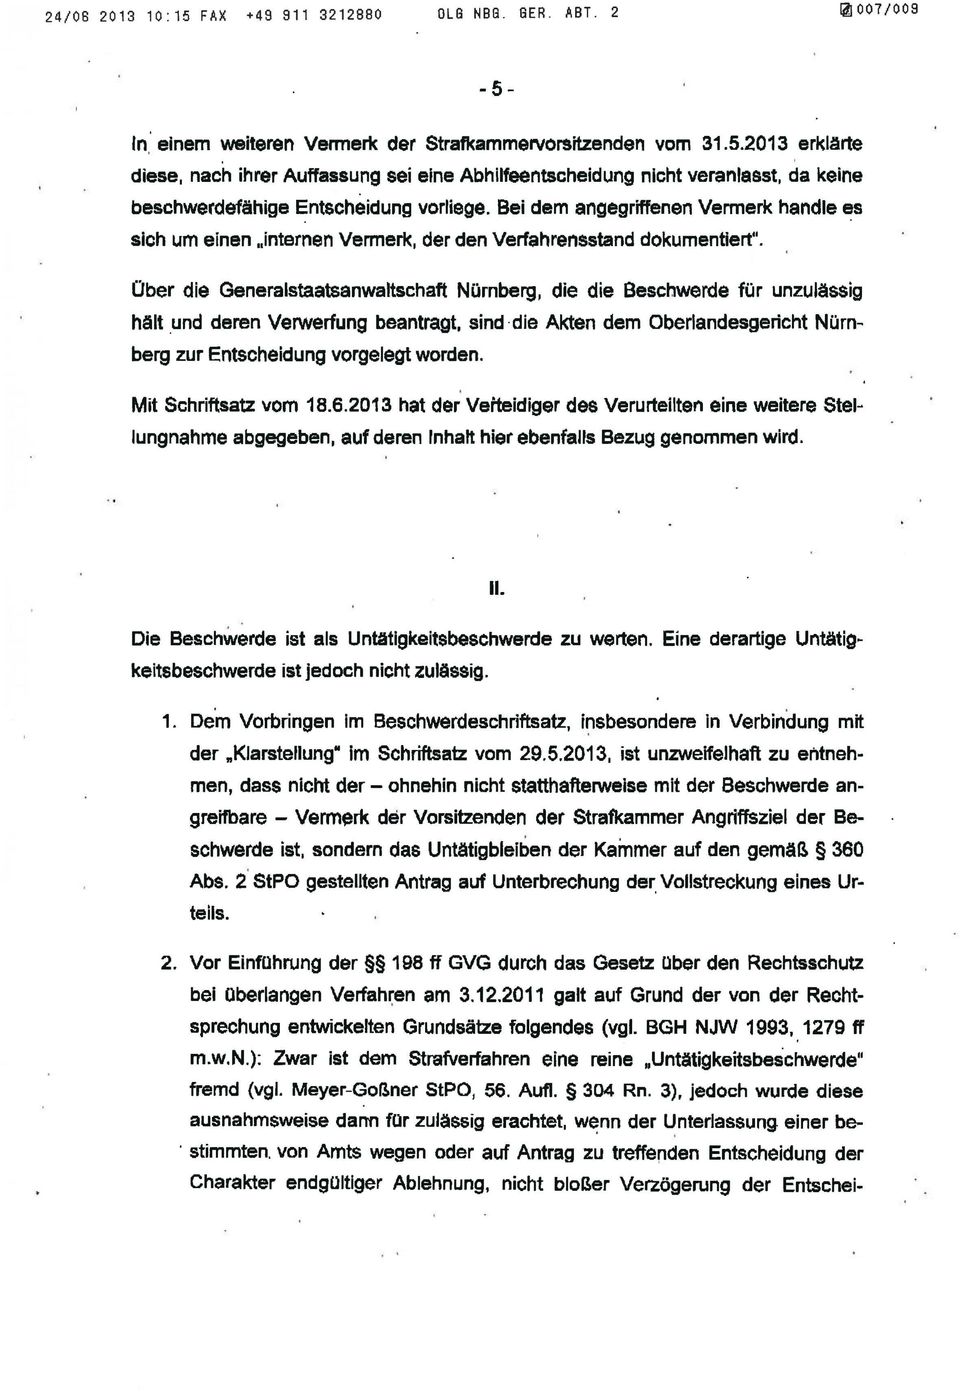 Über die Generalstaatsanwaltschaft Nürnberg, die die Beschwerde für unzulässig h~ut und deren Verwerfung beantragt, sind die Akten dem Oberlandesgericht Nürnberg zur Entscheidung vorgelegt worden.